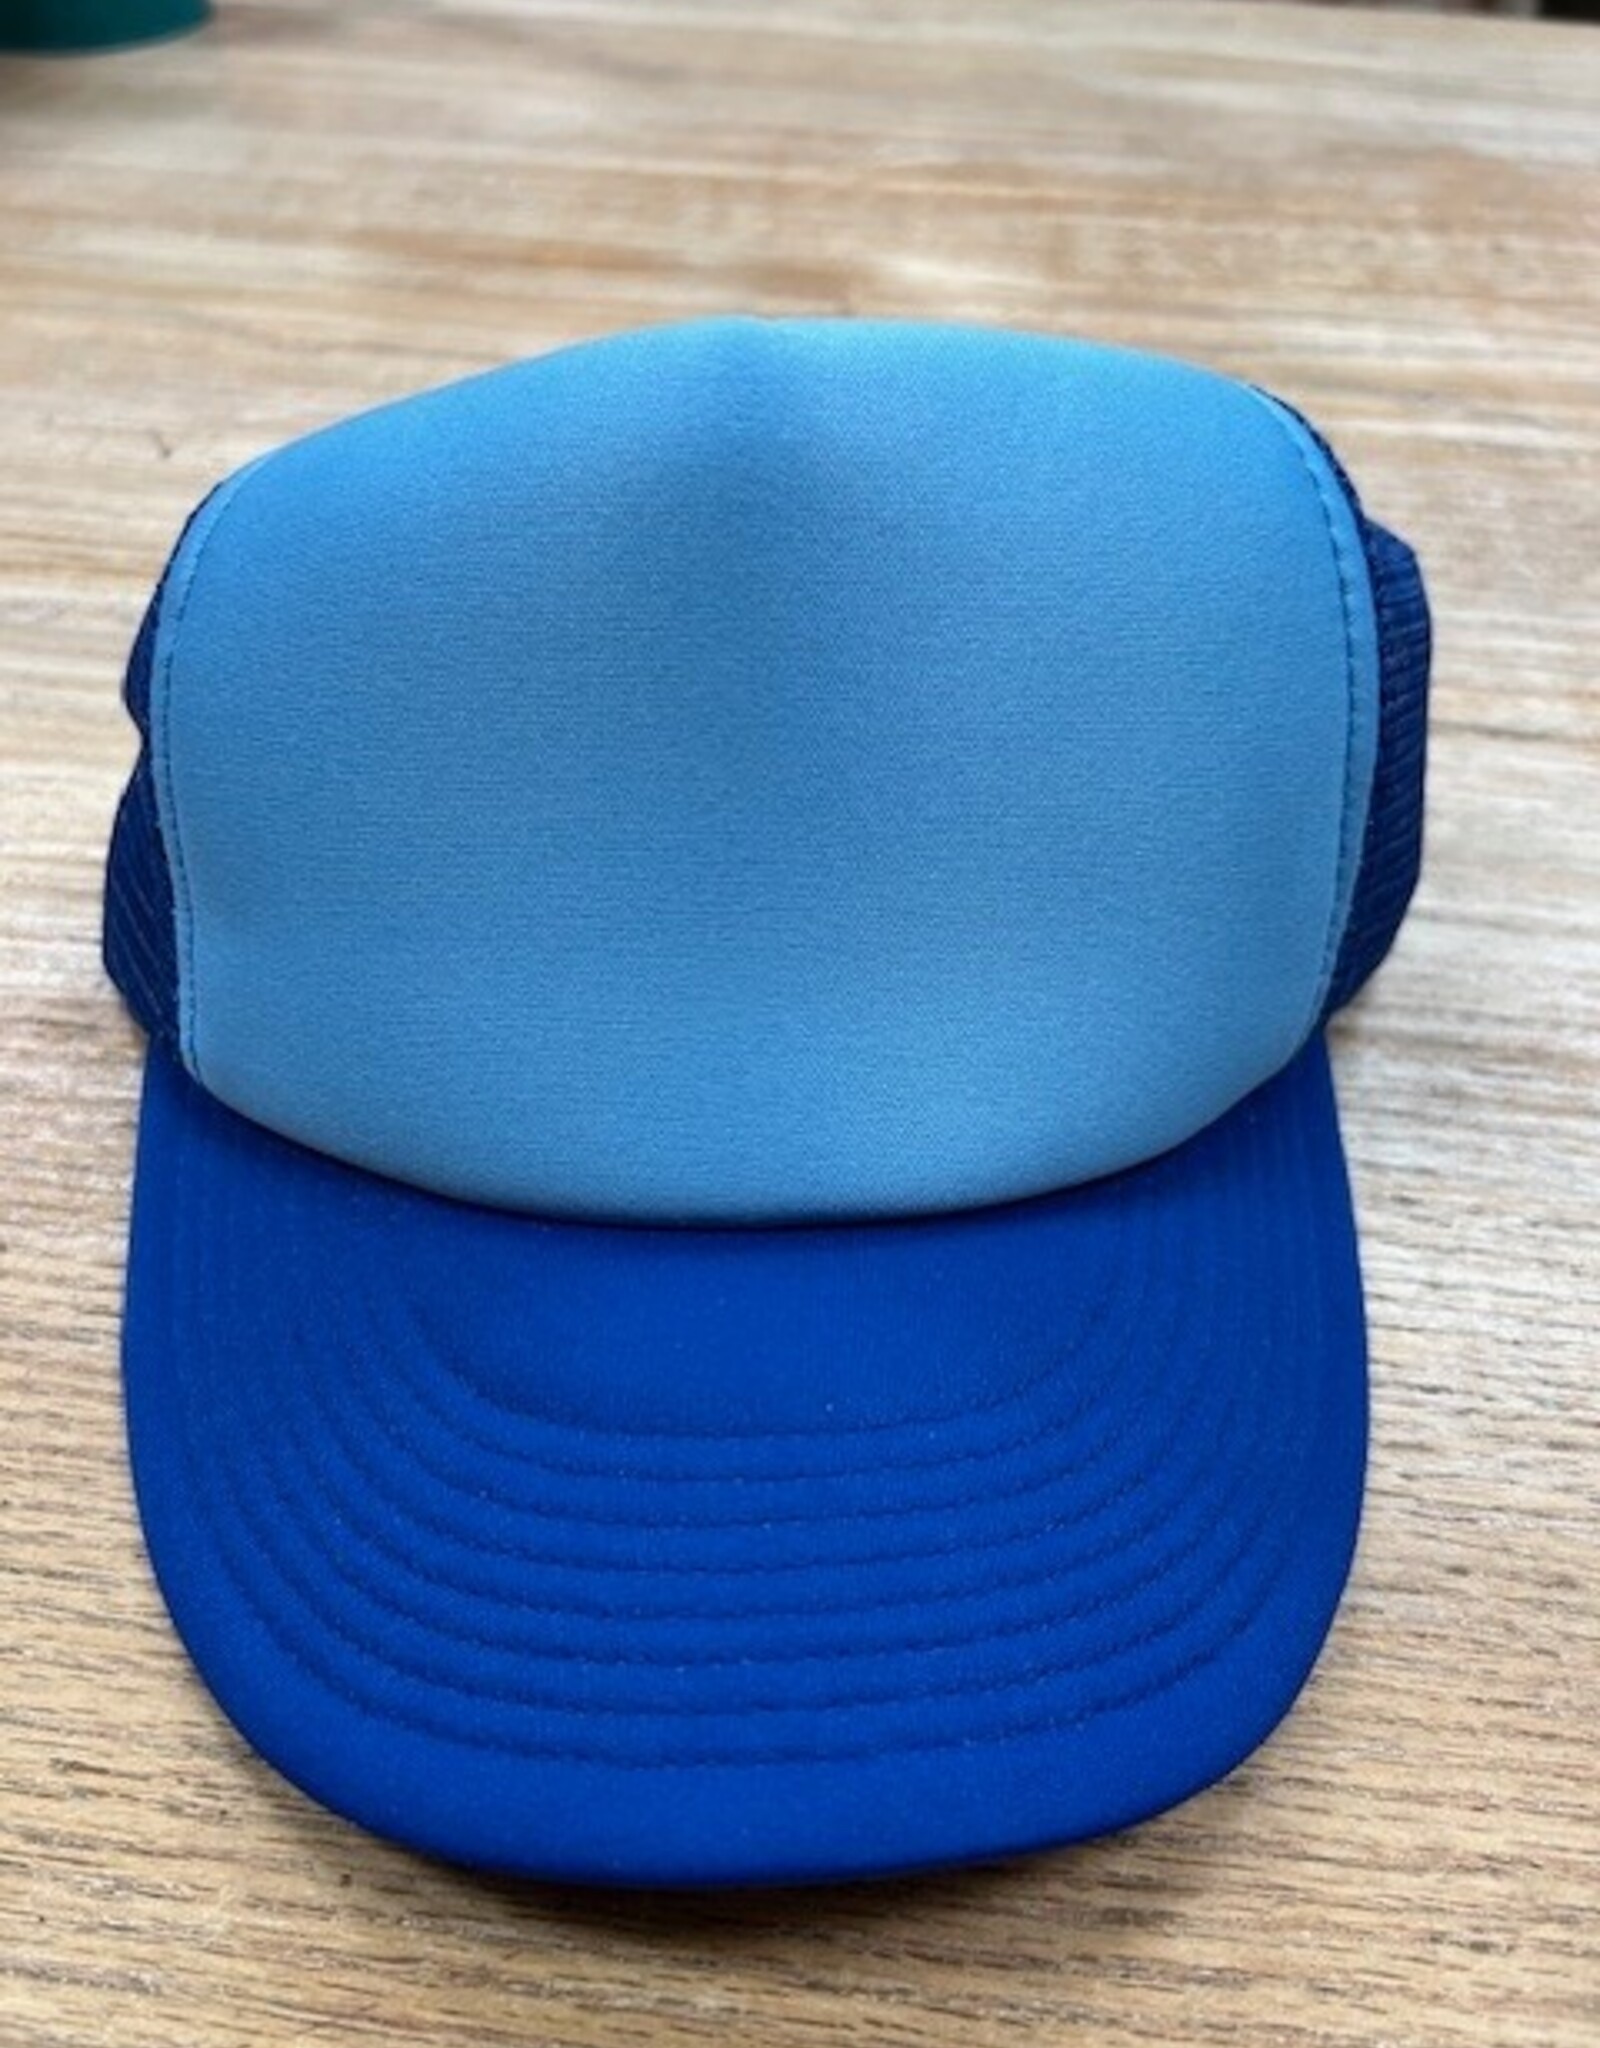 Hat Adjustable Trucker Hat